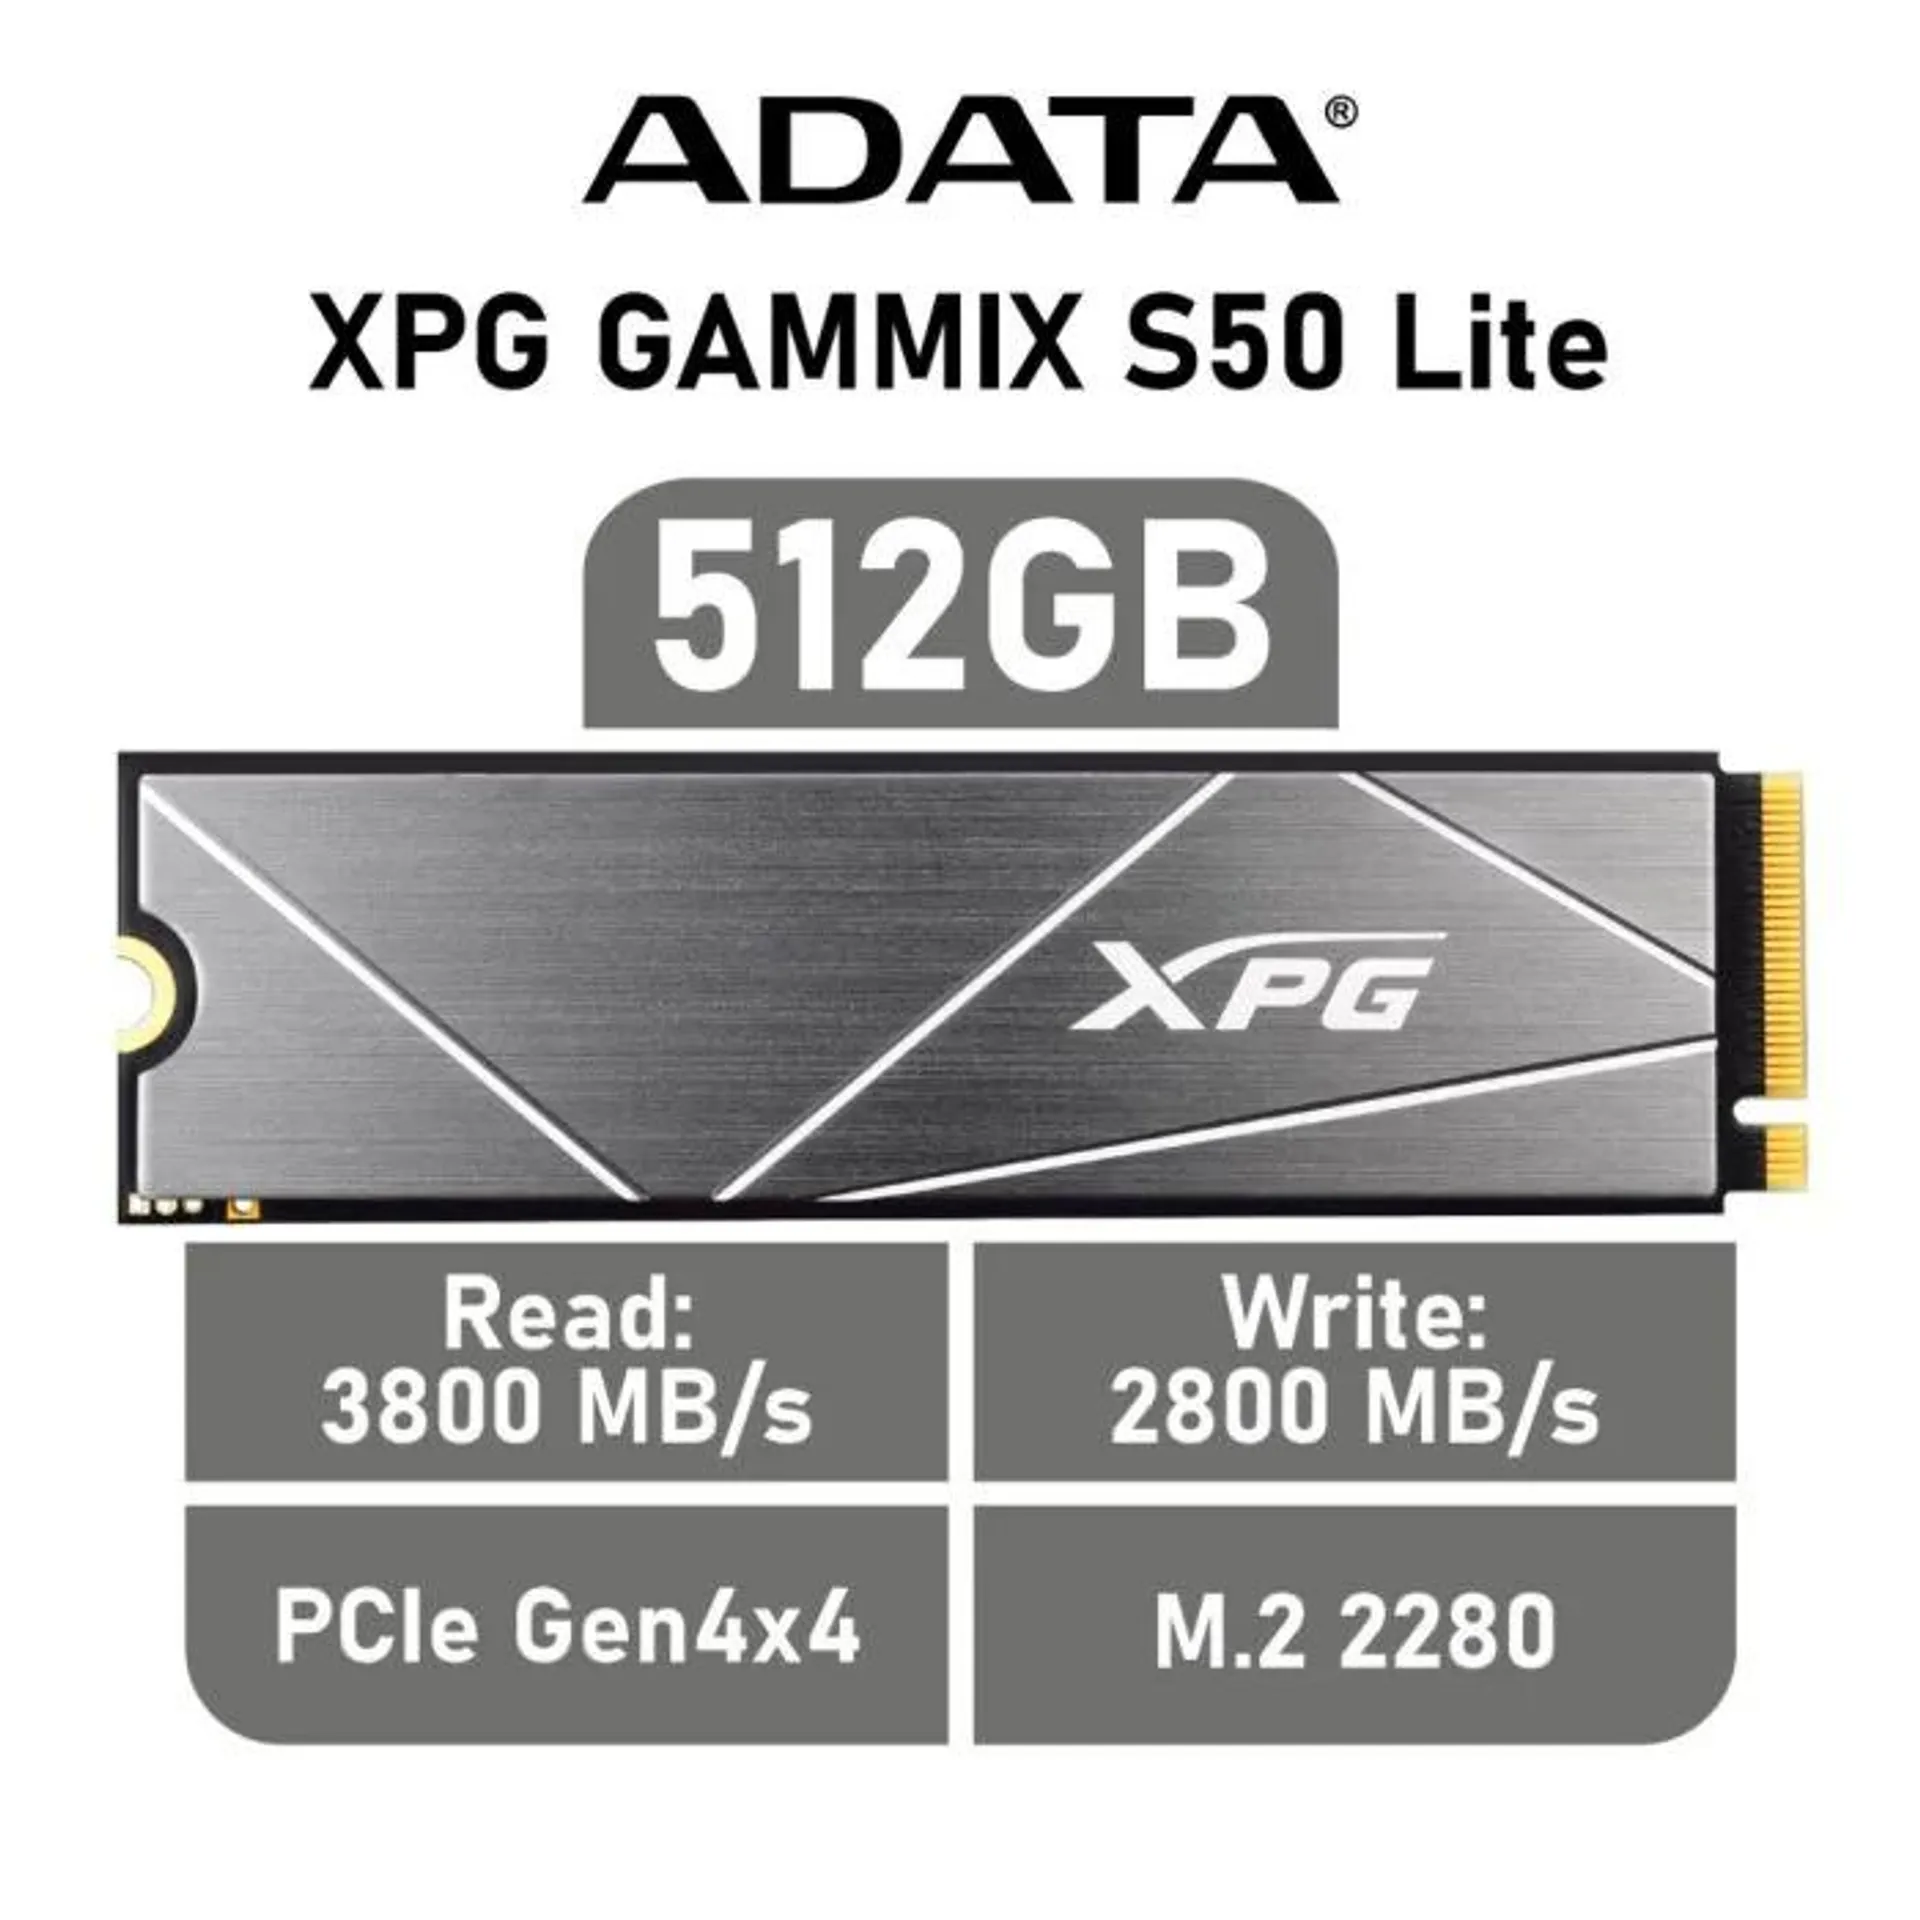 ADATA XPG GAMMIX S50 Lite 512GB PCIe Gen4x4 AGAMMIXS50L-512G-C M.2 2280 Solid State Drive